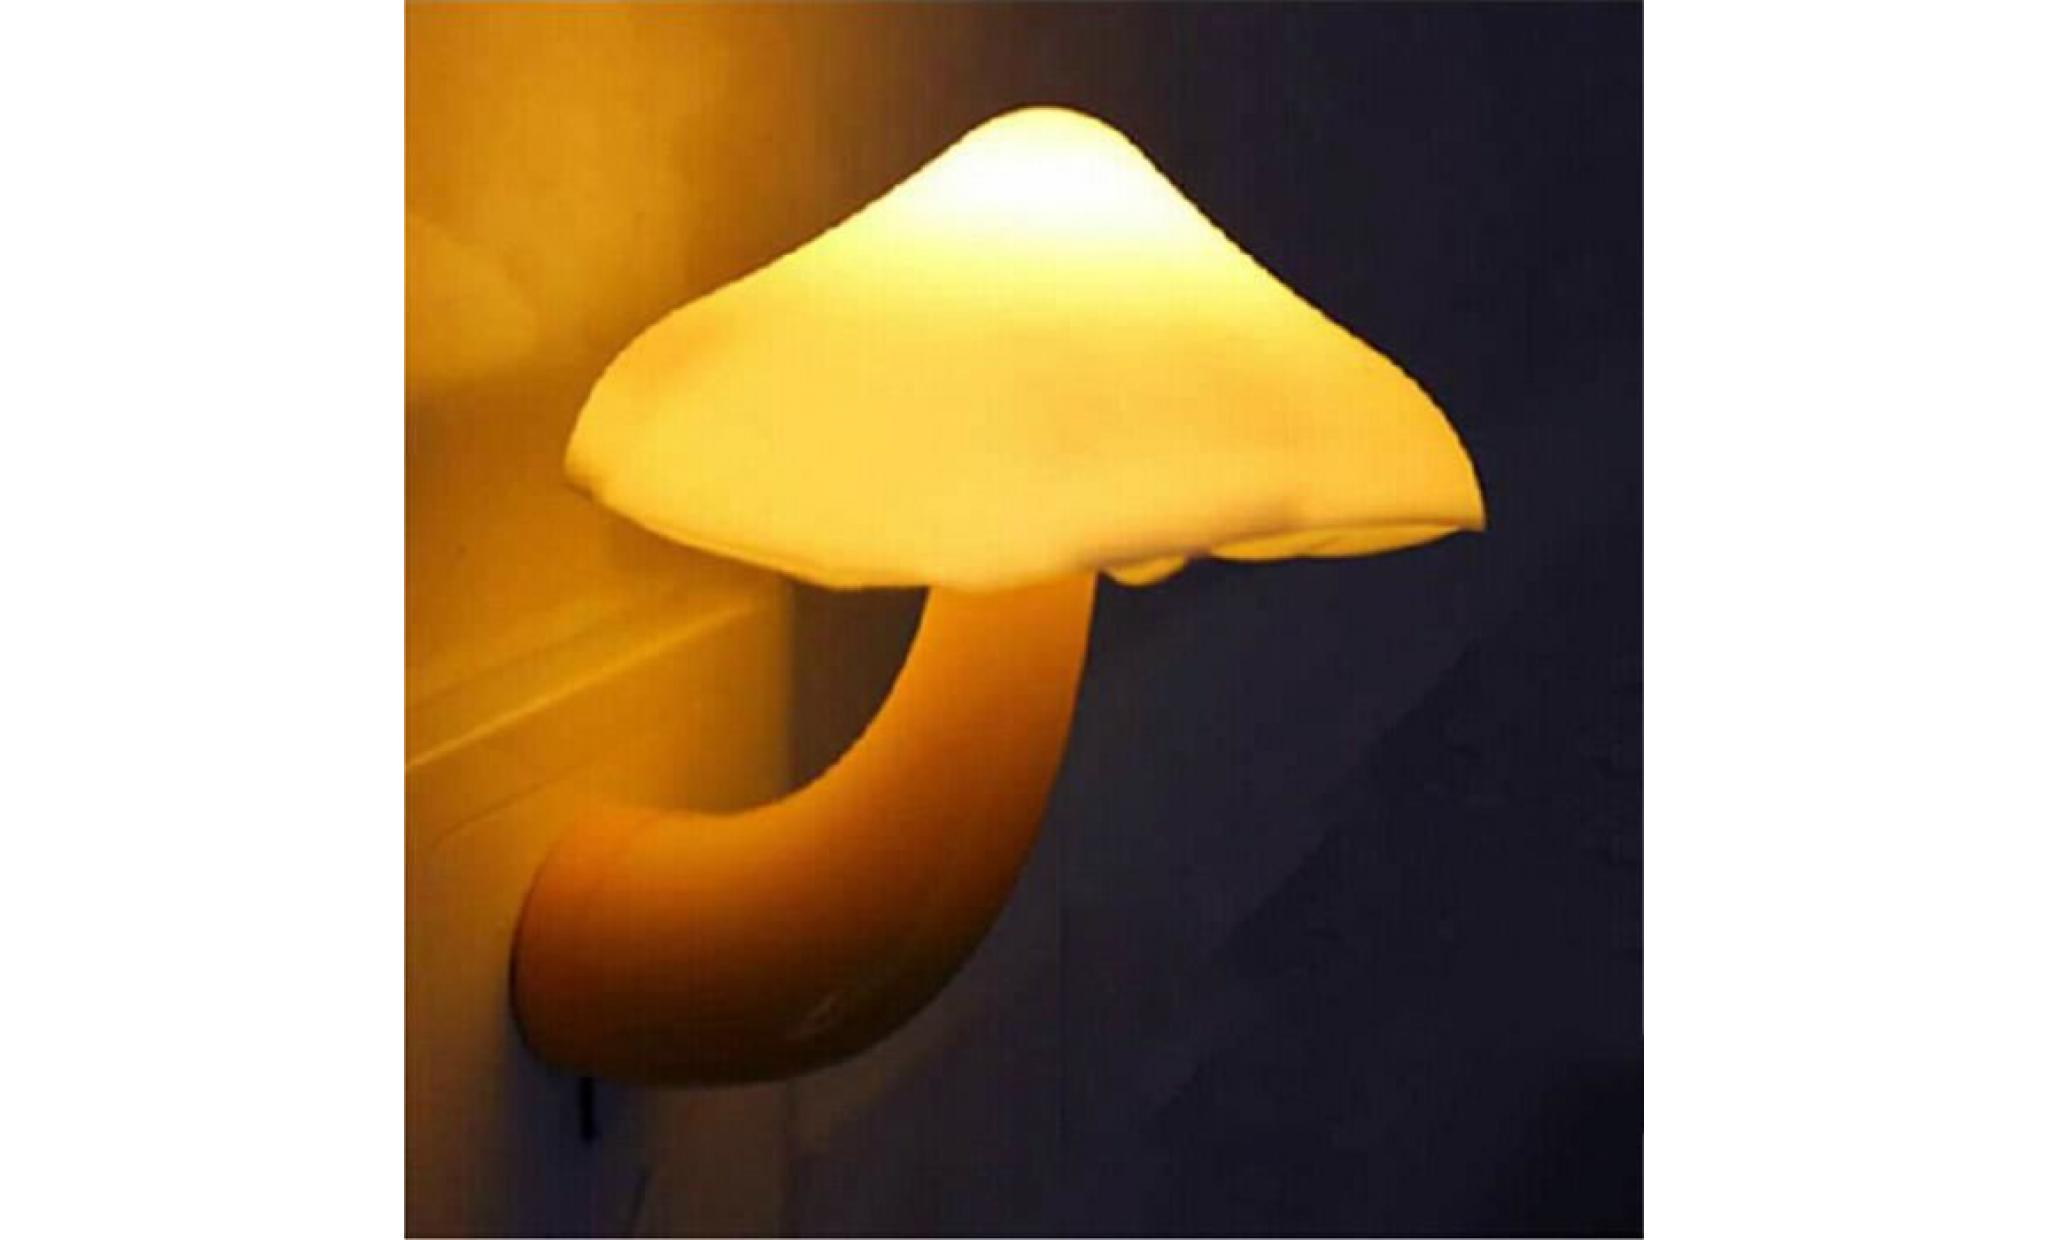 mini applique murale chevet  led forme champignon allumage inductive dimension 10*8cm puissance 0.5w idéal pour chambre lumière nuit